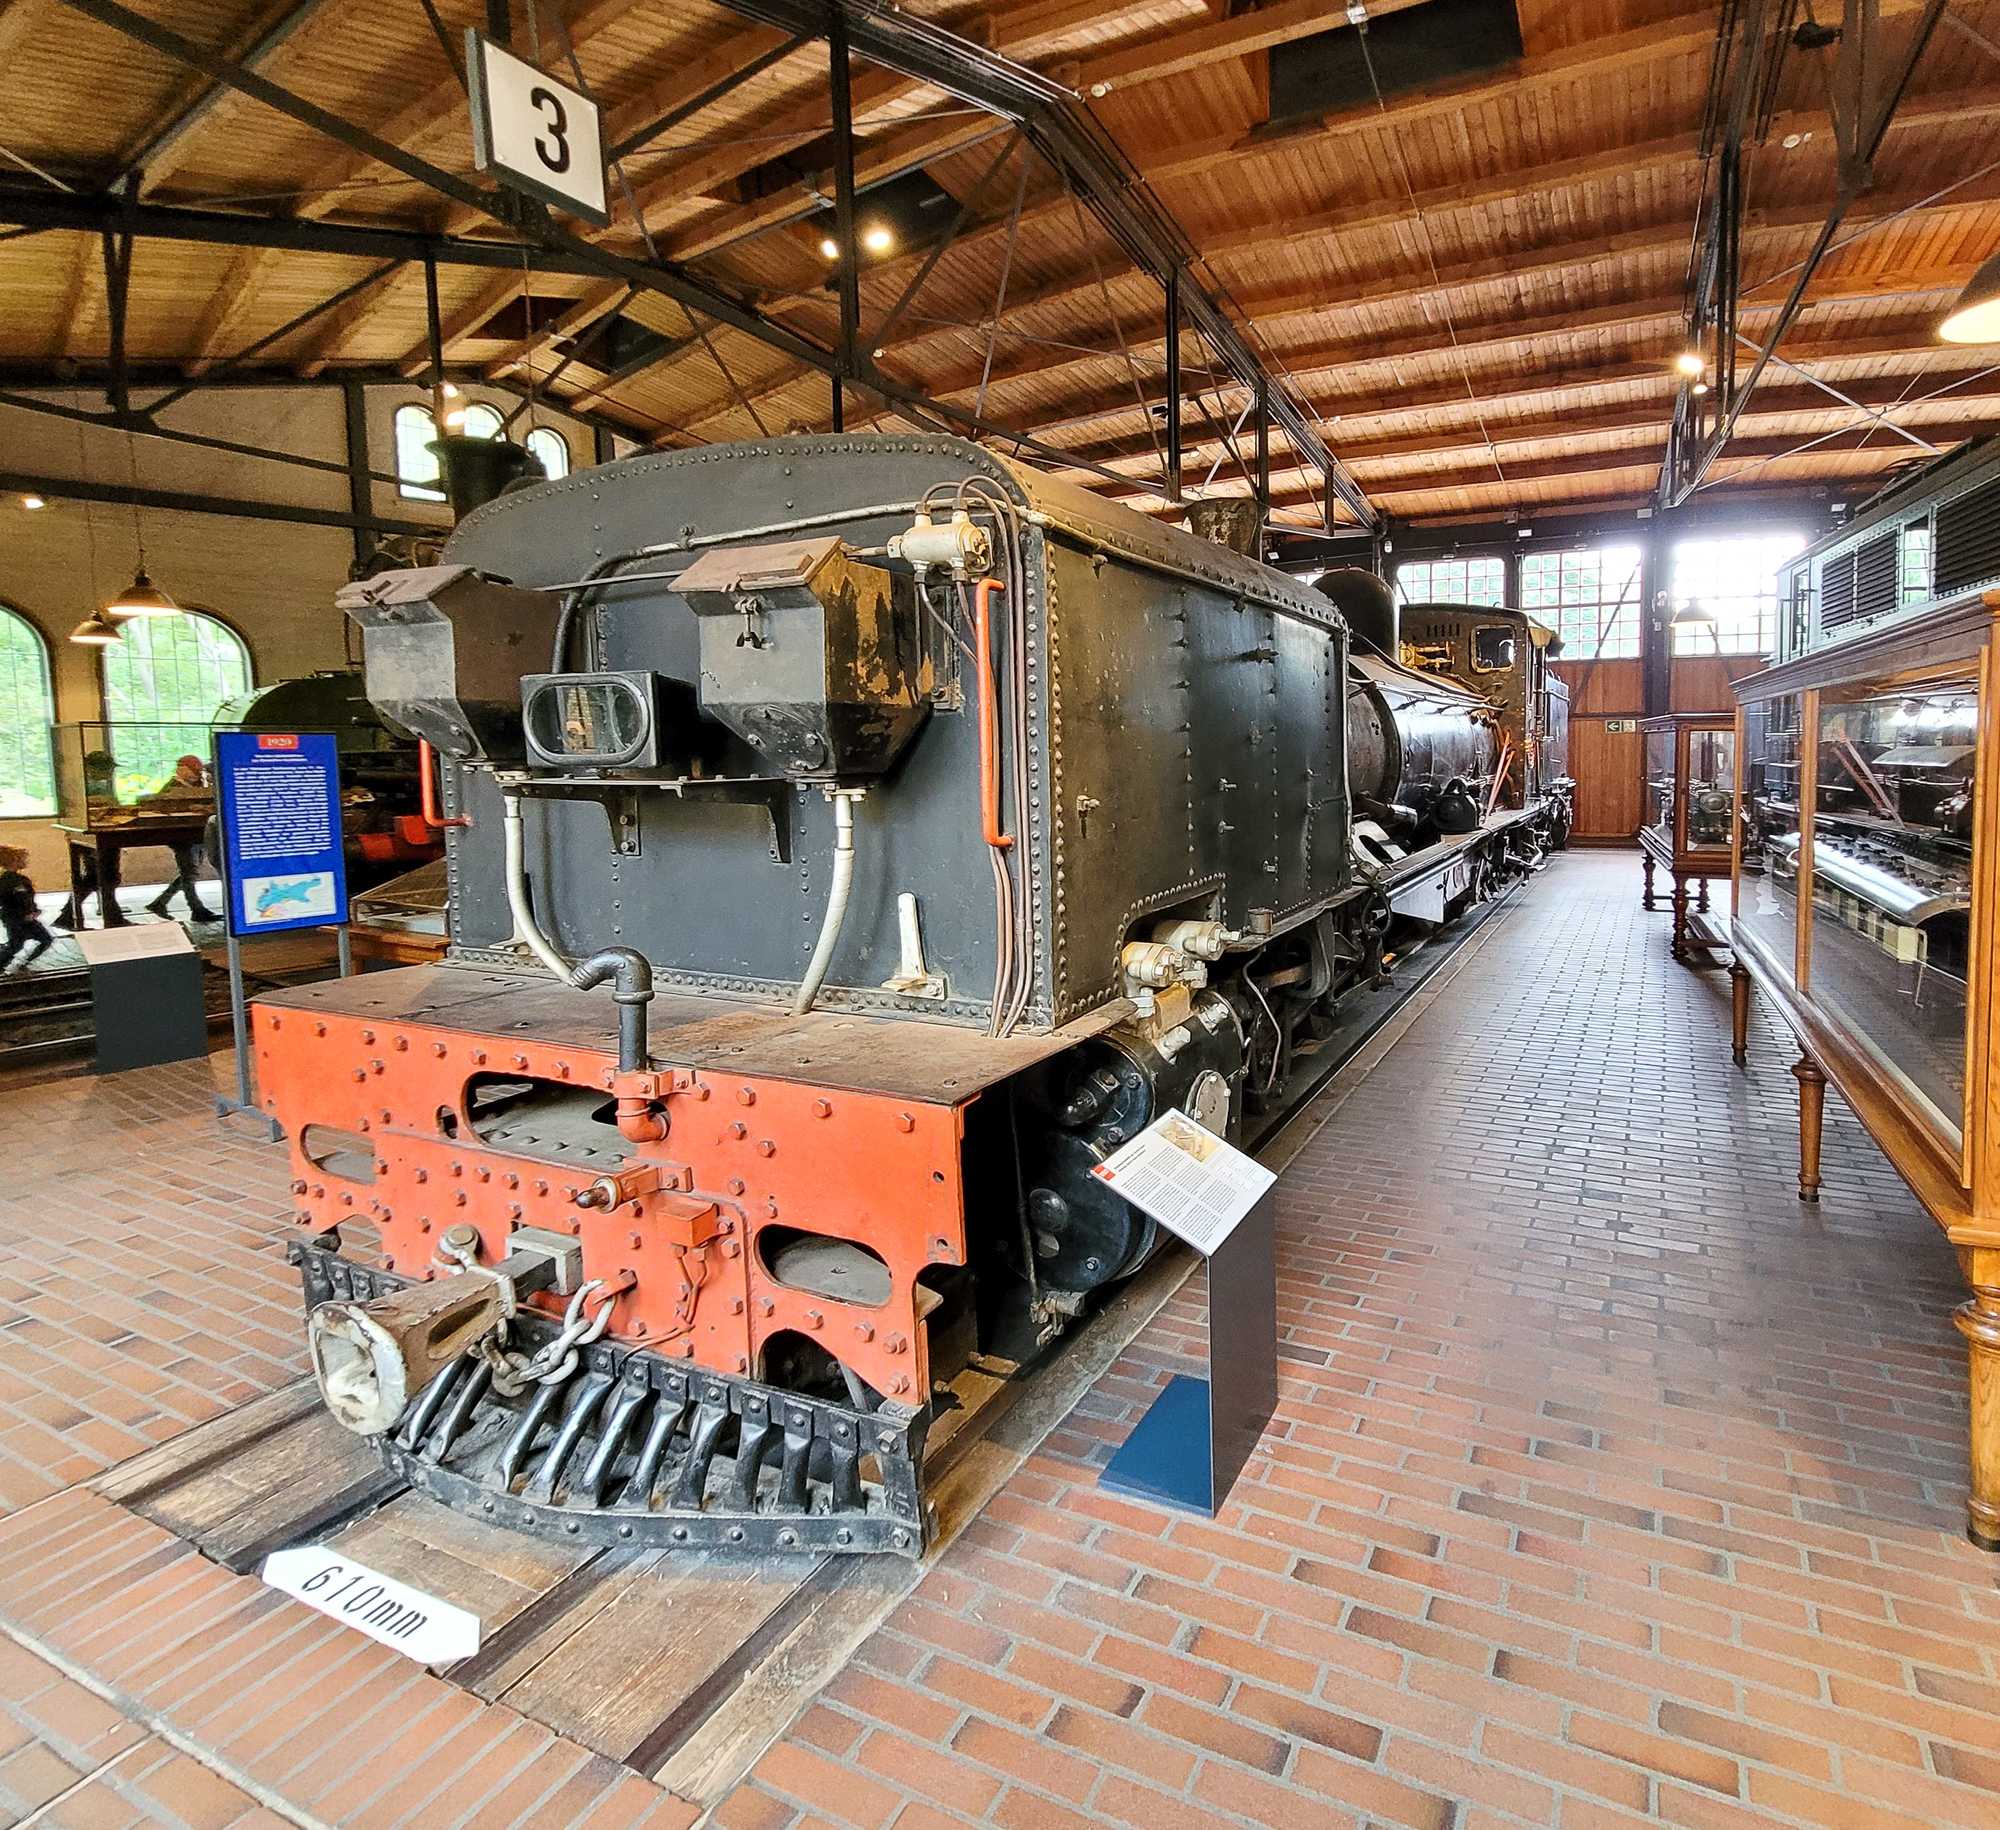 Garratt-Lokomotiven kamen in Deutschland einst nicht zum Einsatz – im Technikmuseum in Berlin kann jedoch ein Exemplar dieser in Südafrika weit verbreiteten Gelenkbauart besichtigt werden.